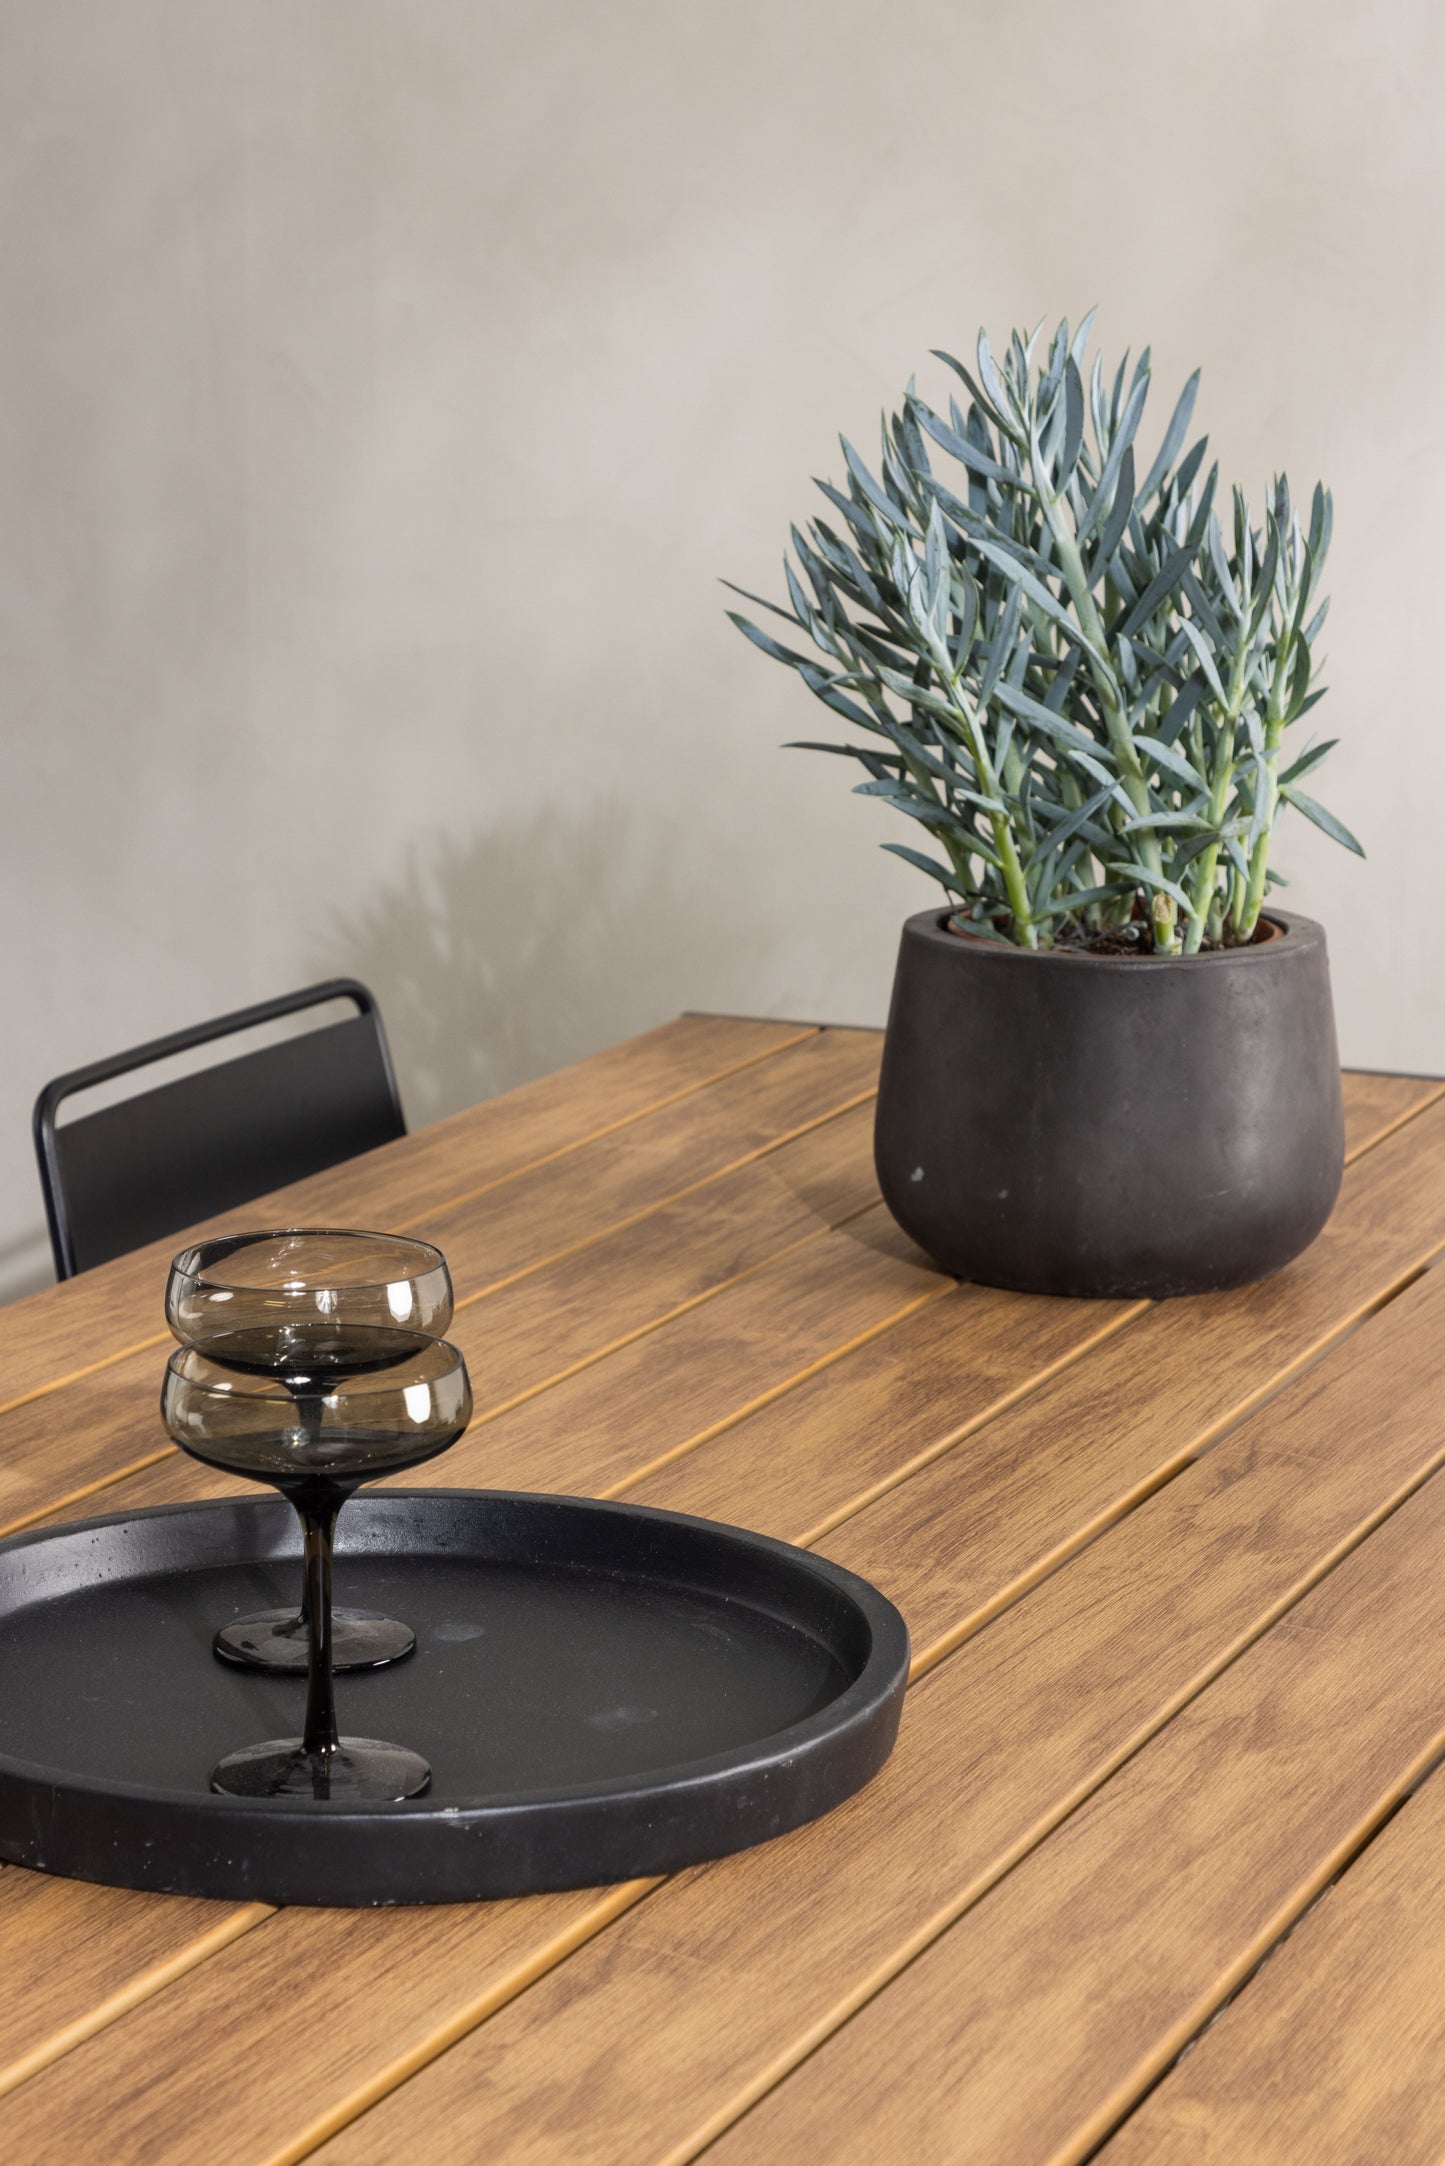 Break - Spisebord, Aluminium - Sort / Natur Rektangulær 90*200* + Lia Spisebordsstol - Sort